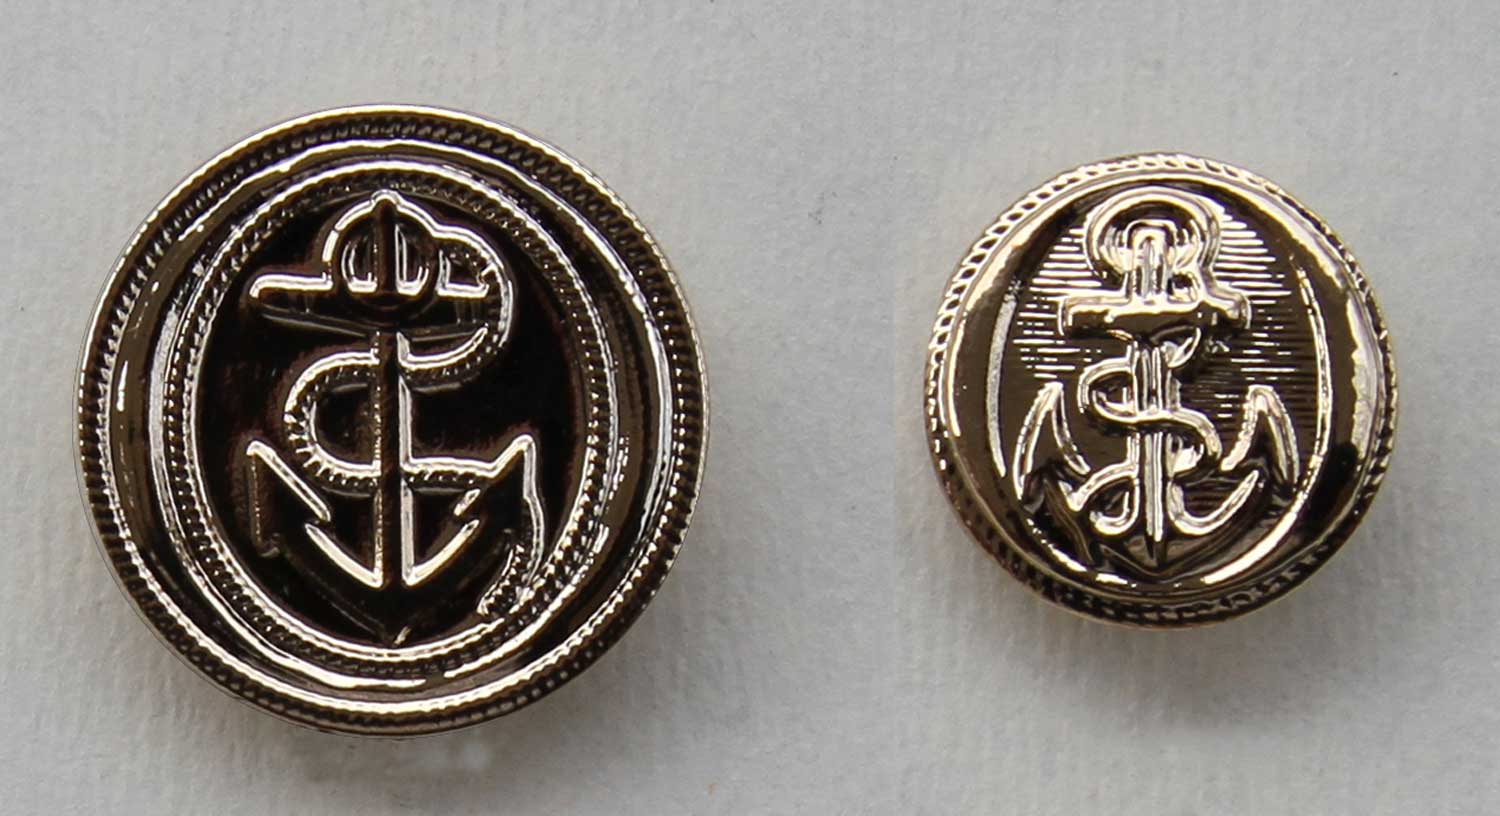 Royal Navy (1795-1812) Captain and Lieutenant